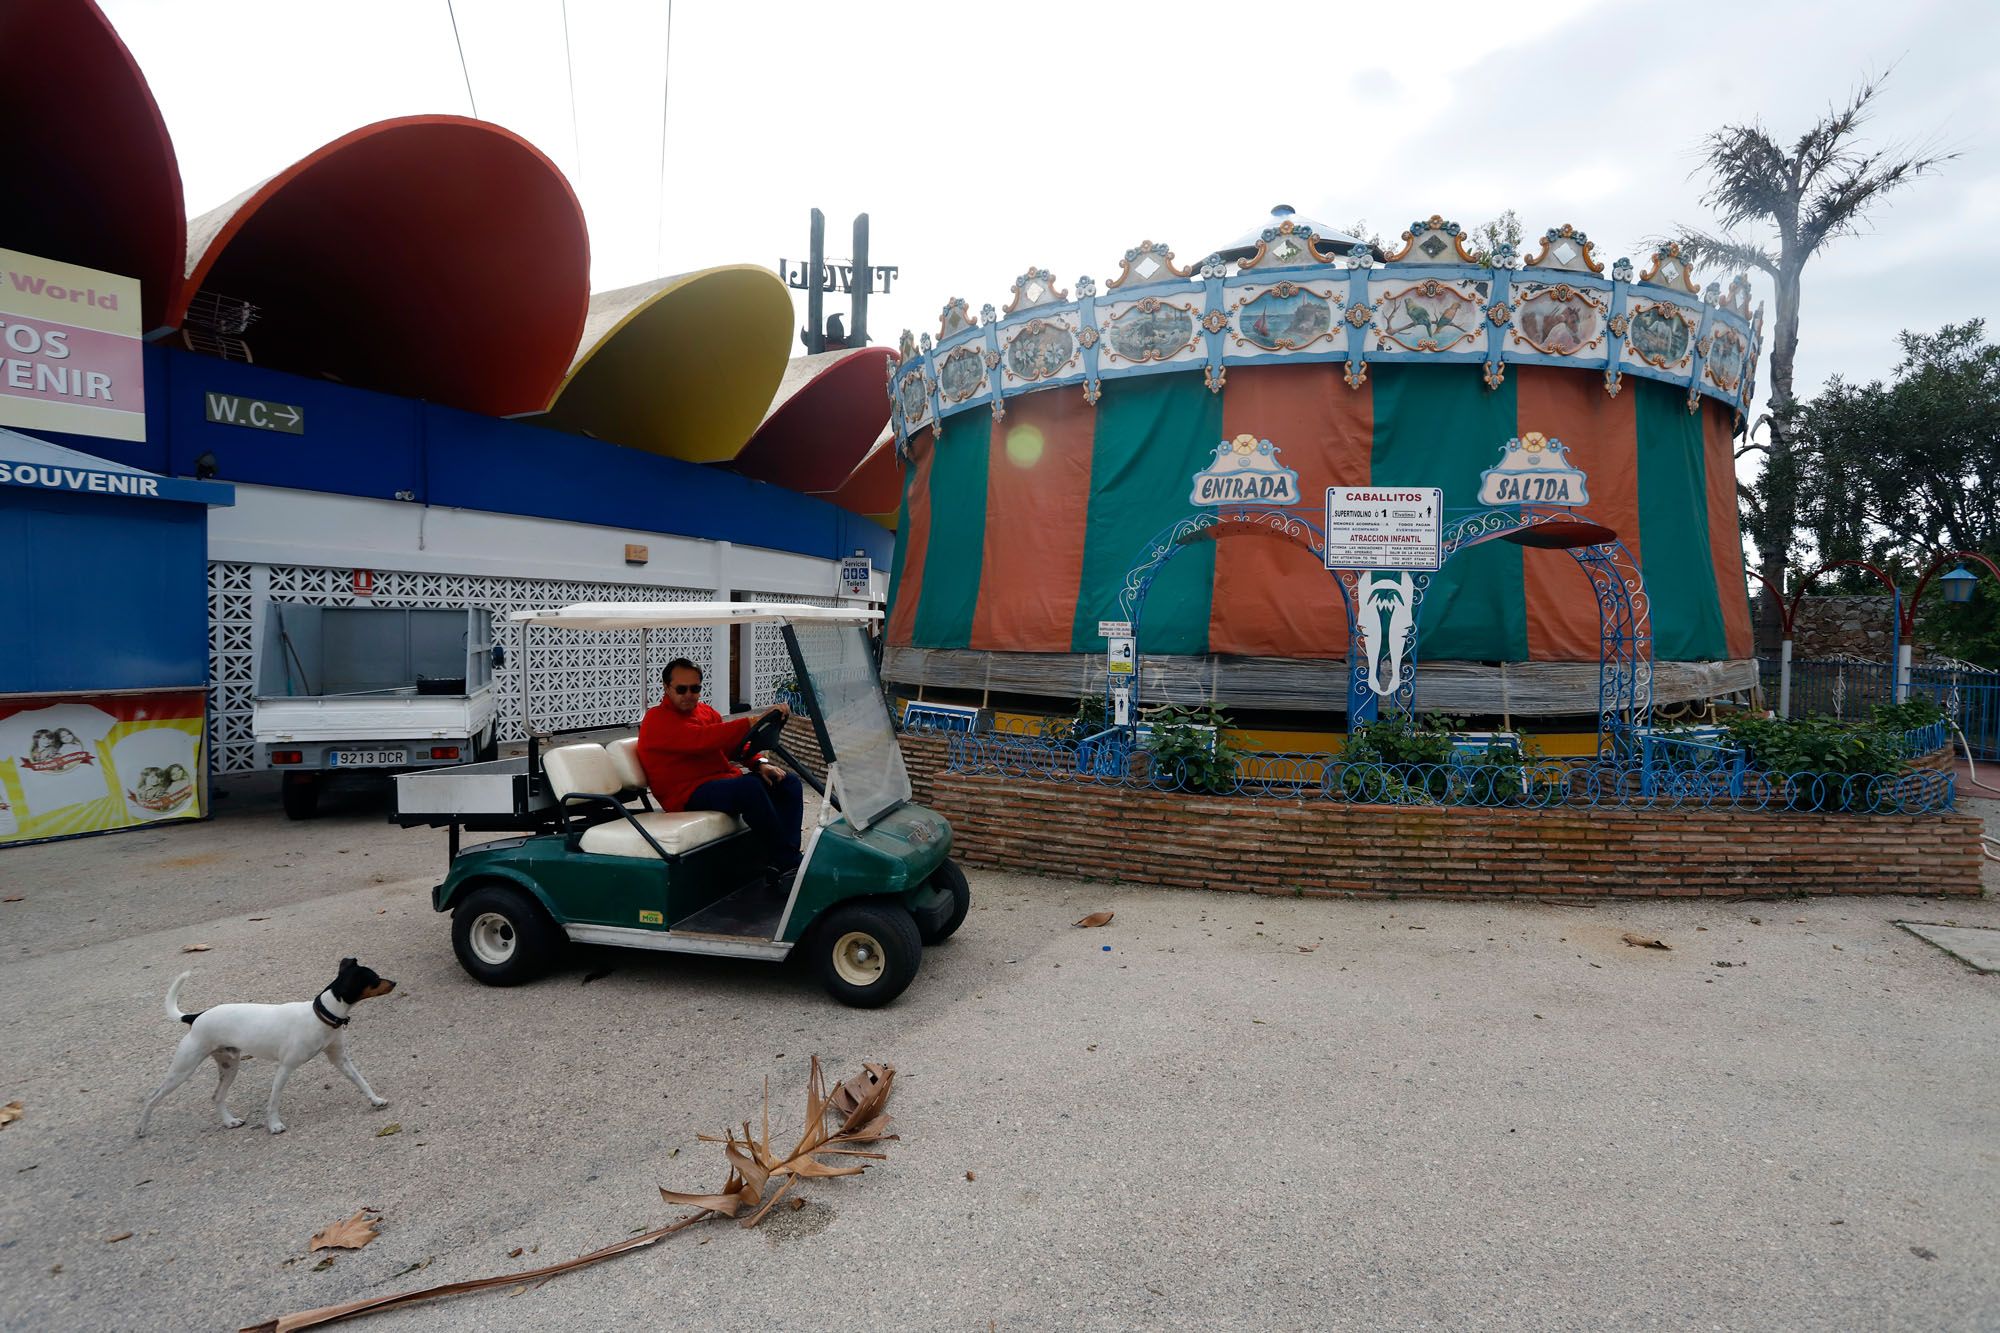 Instalaciones del parque de atracciones Tivoli World en Benalmádena